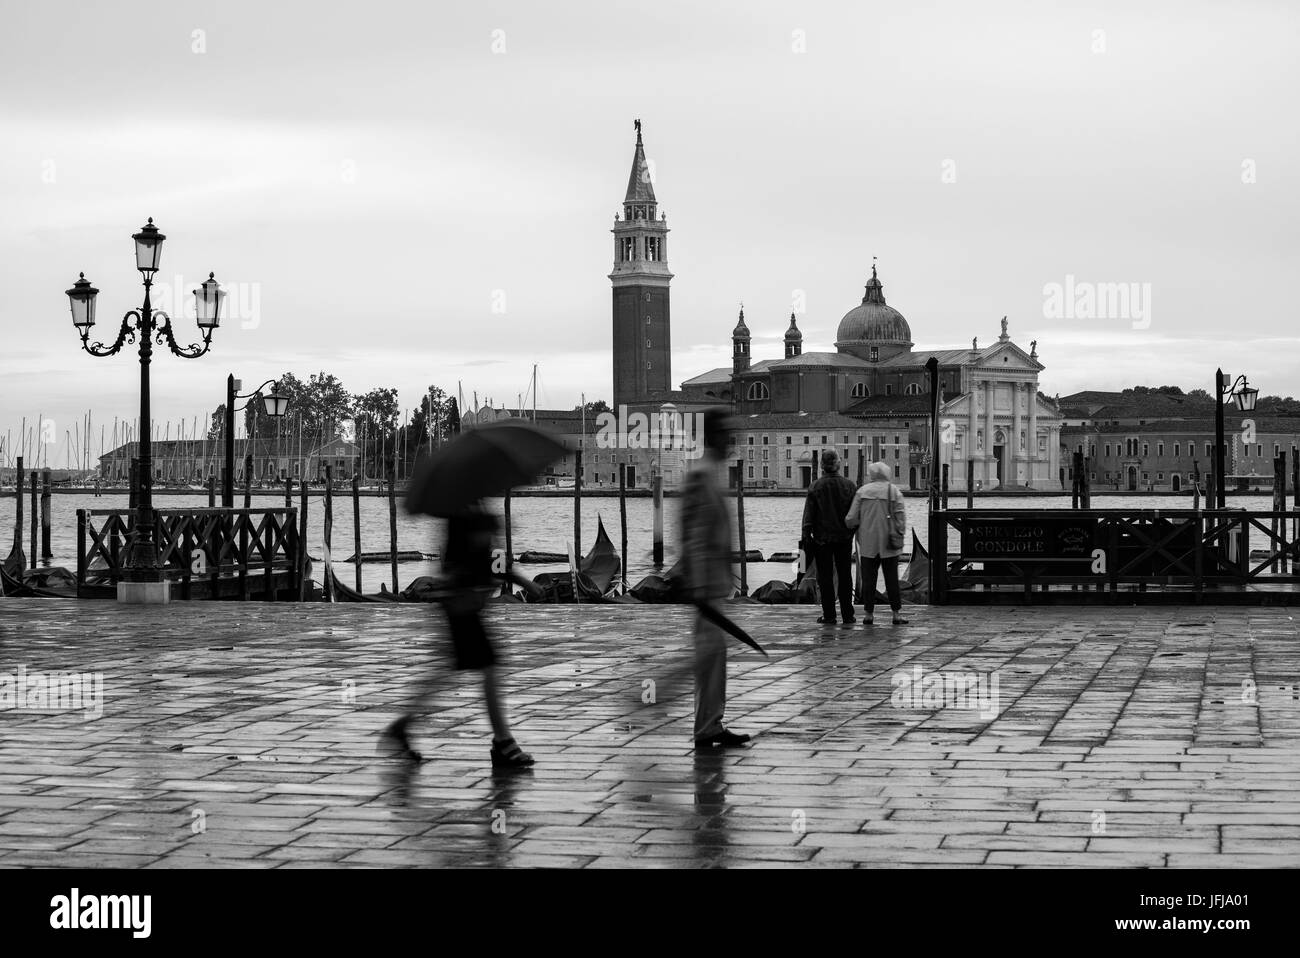 Europe, Italy, Venice, Stock Photo